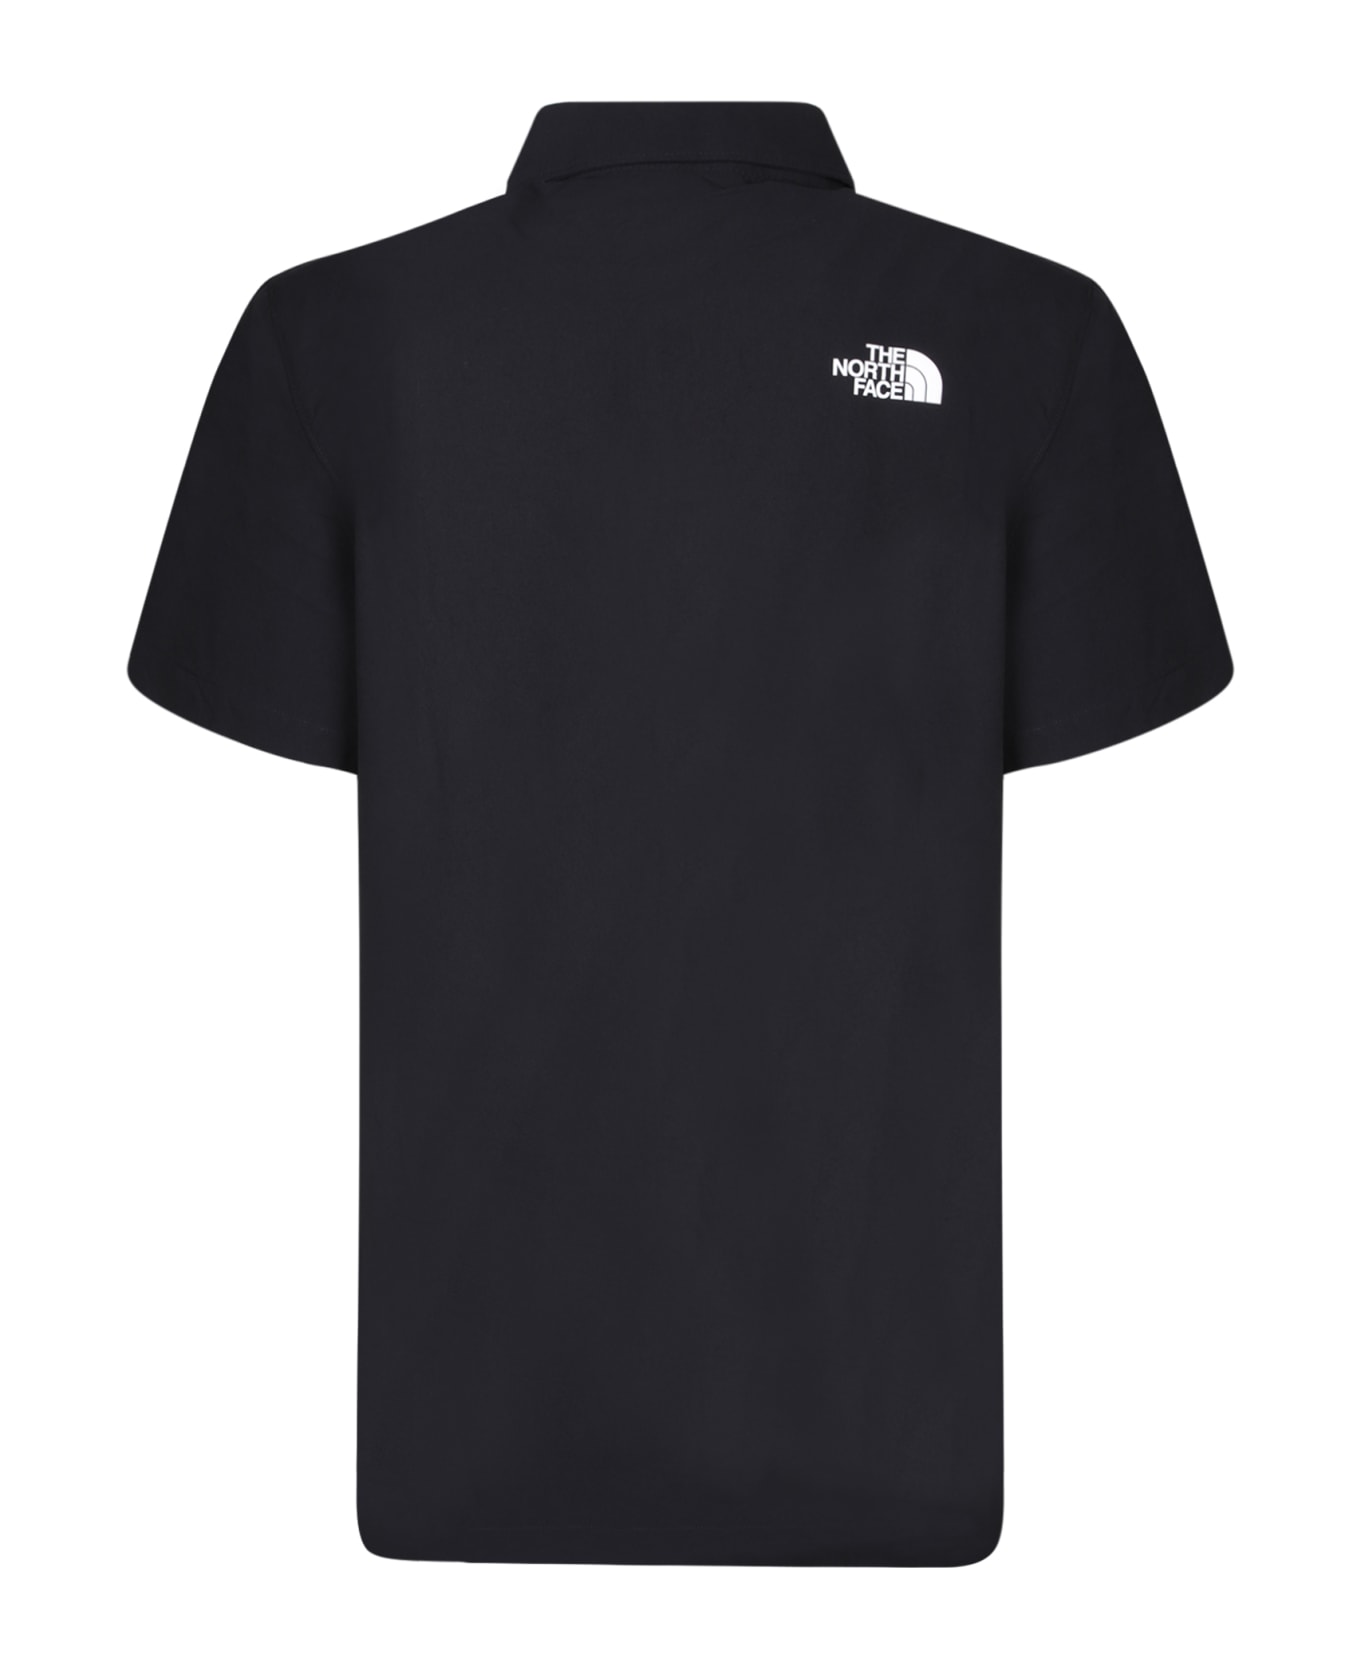 The North Face Sakami Logo Black Shirt - Black